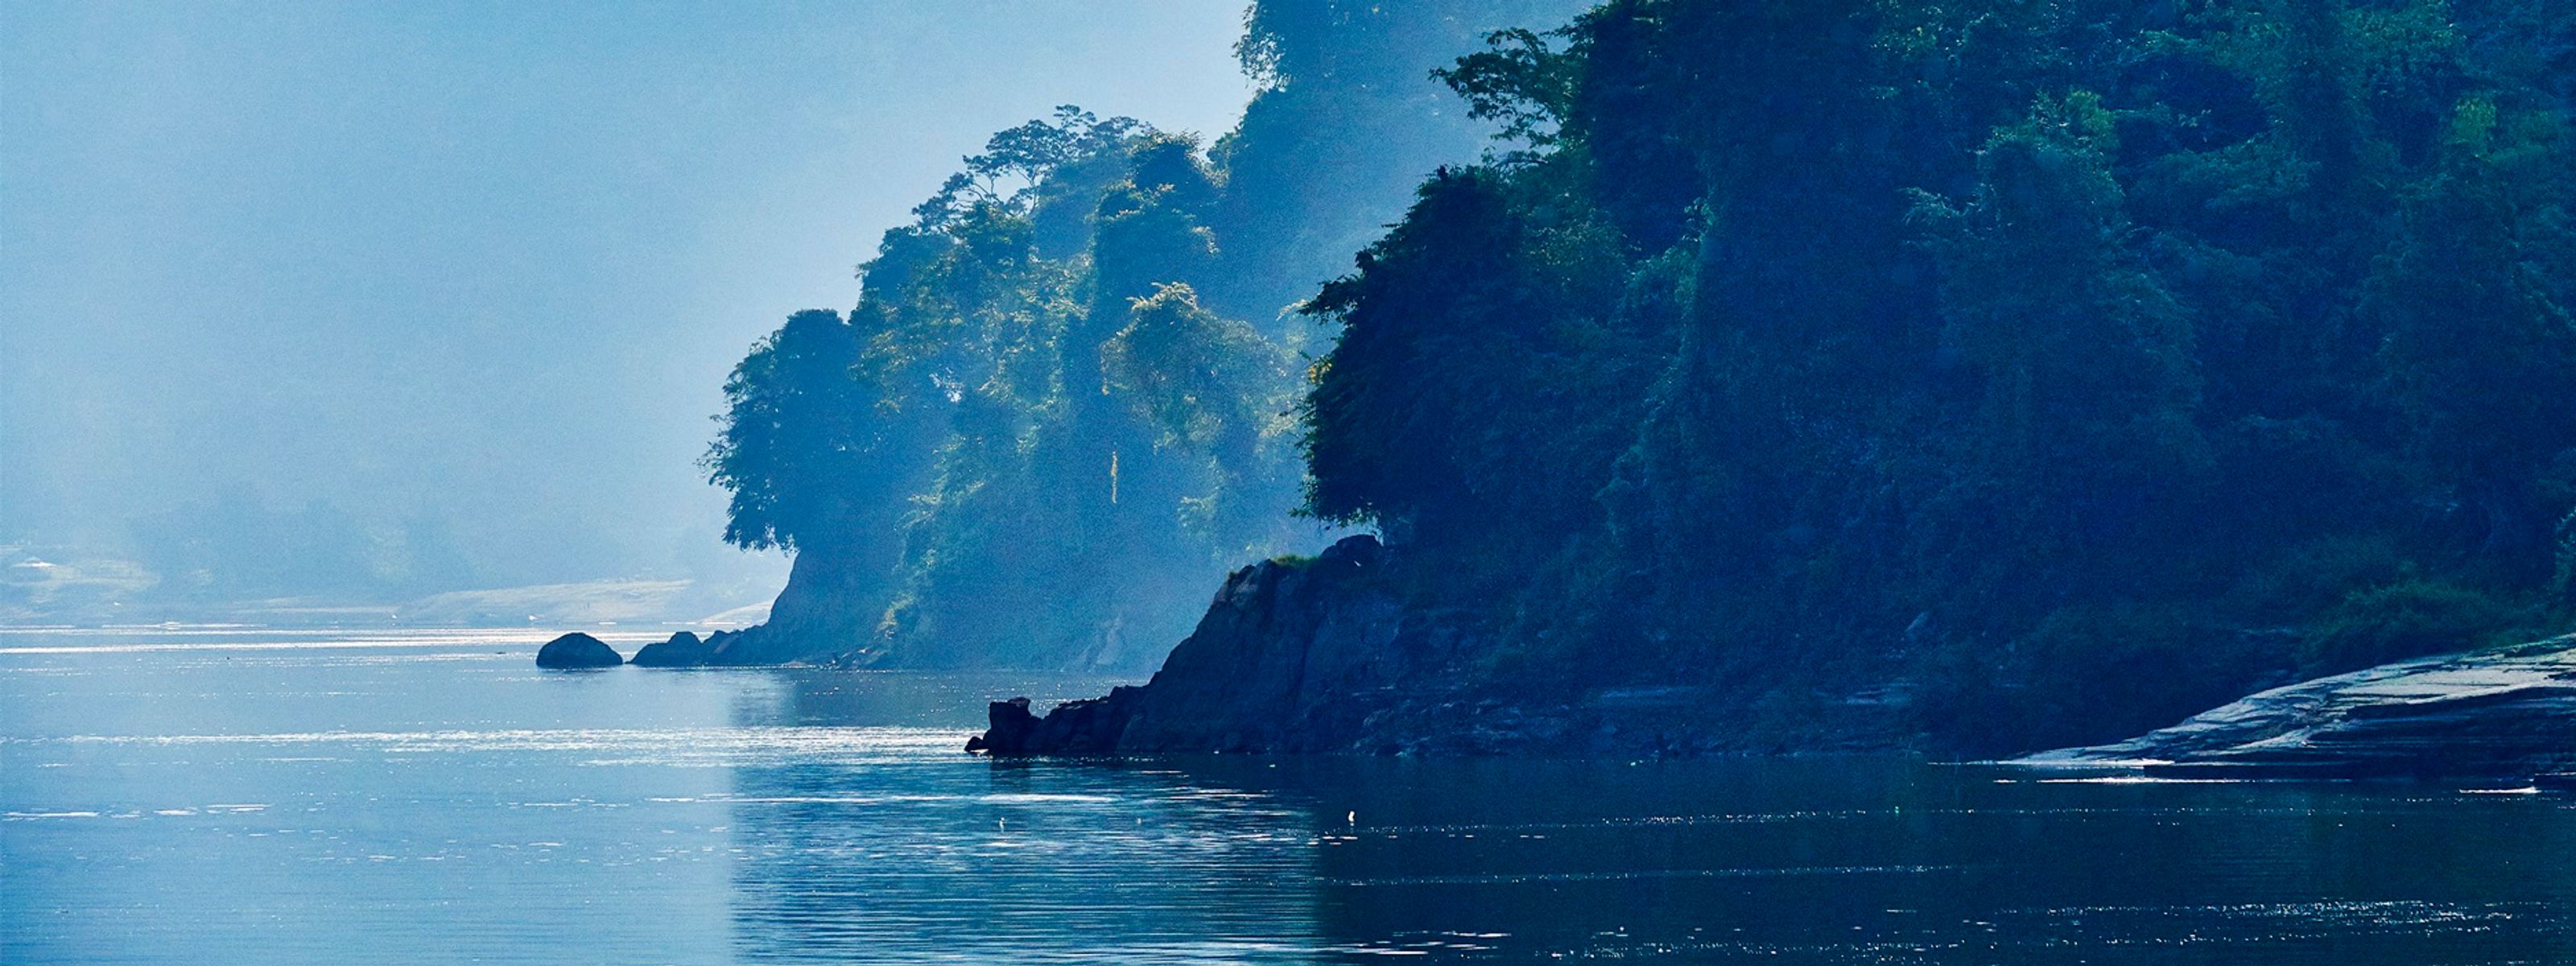 Flusskreuzfahrt in Myanmar auf der RV Paukan: Von Yangon nach Mandalay